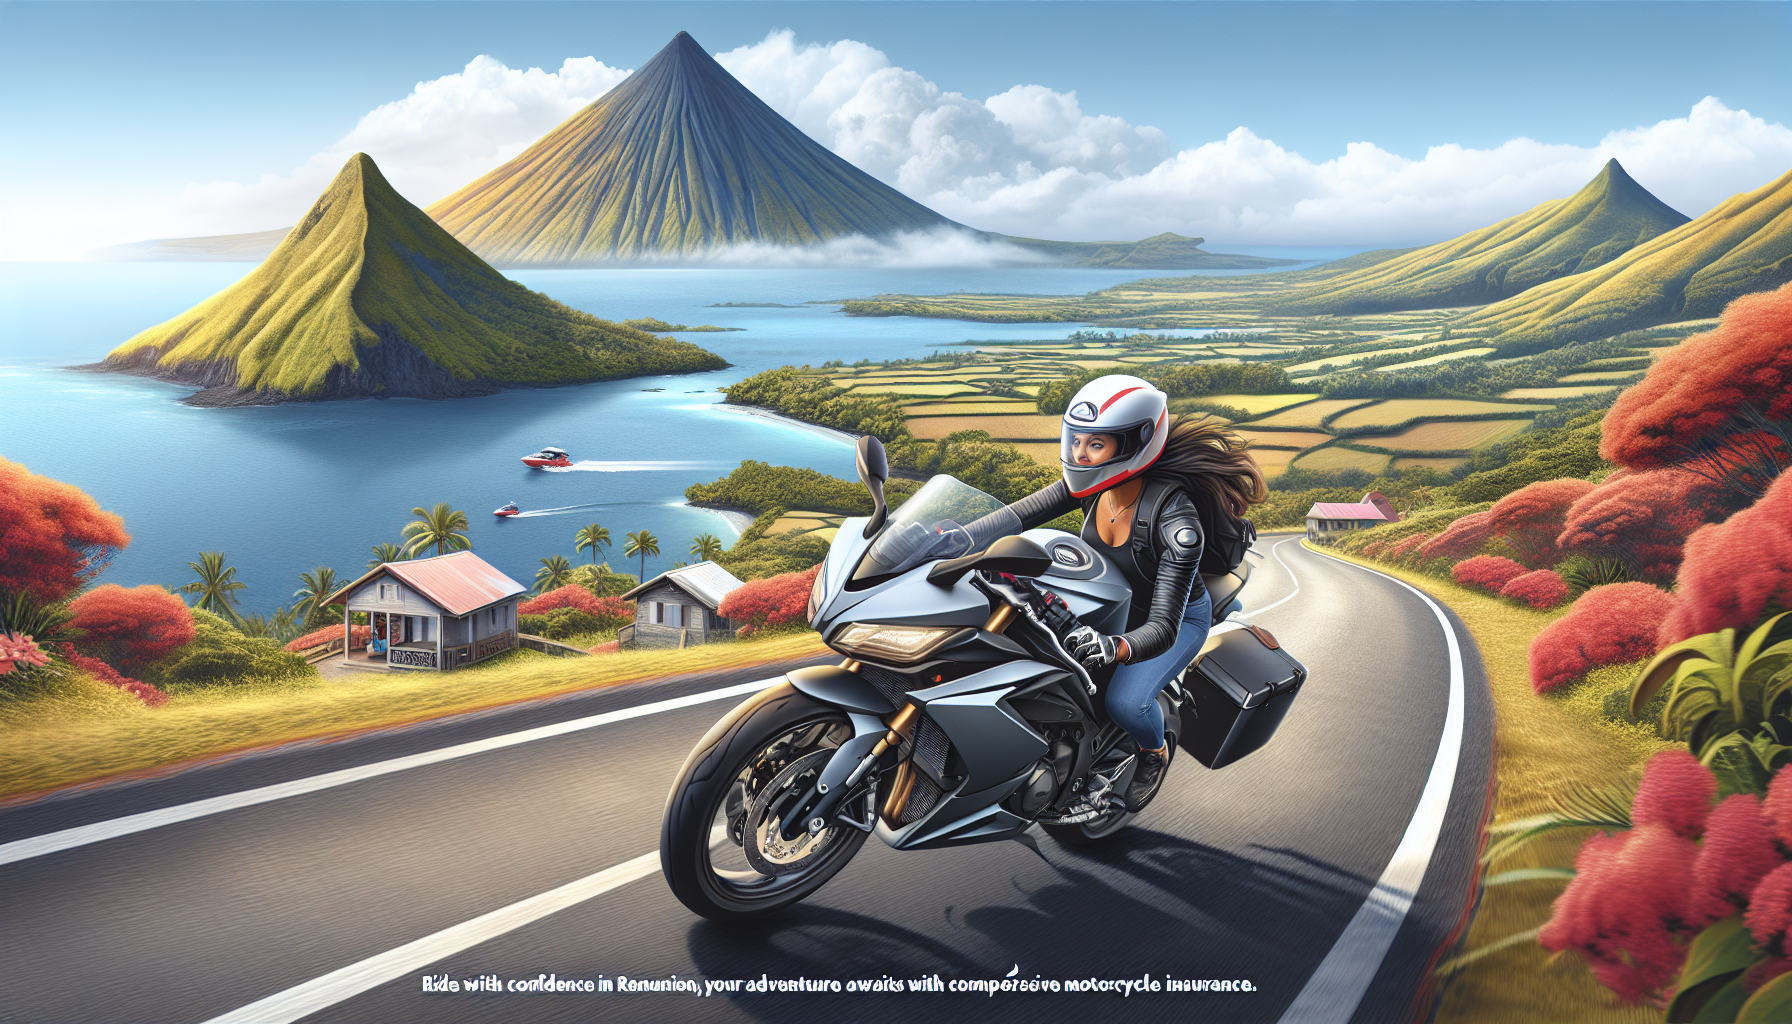 découvrez l'assurance moto tous risques adaptée à la réunion pour protéger votre moto avec les garanties essentielles.